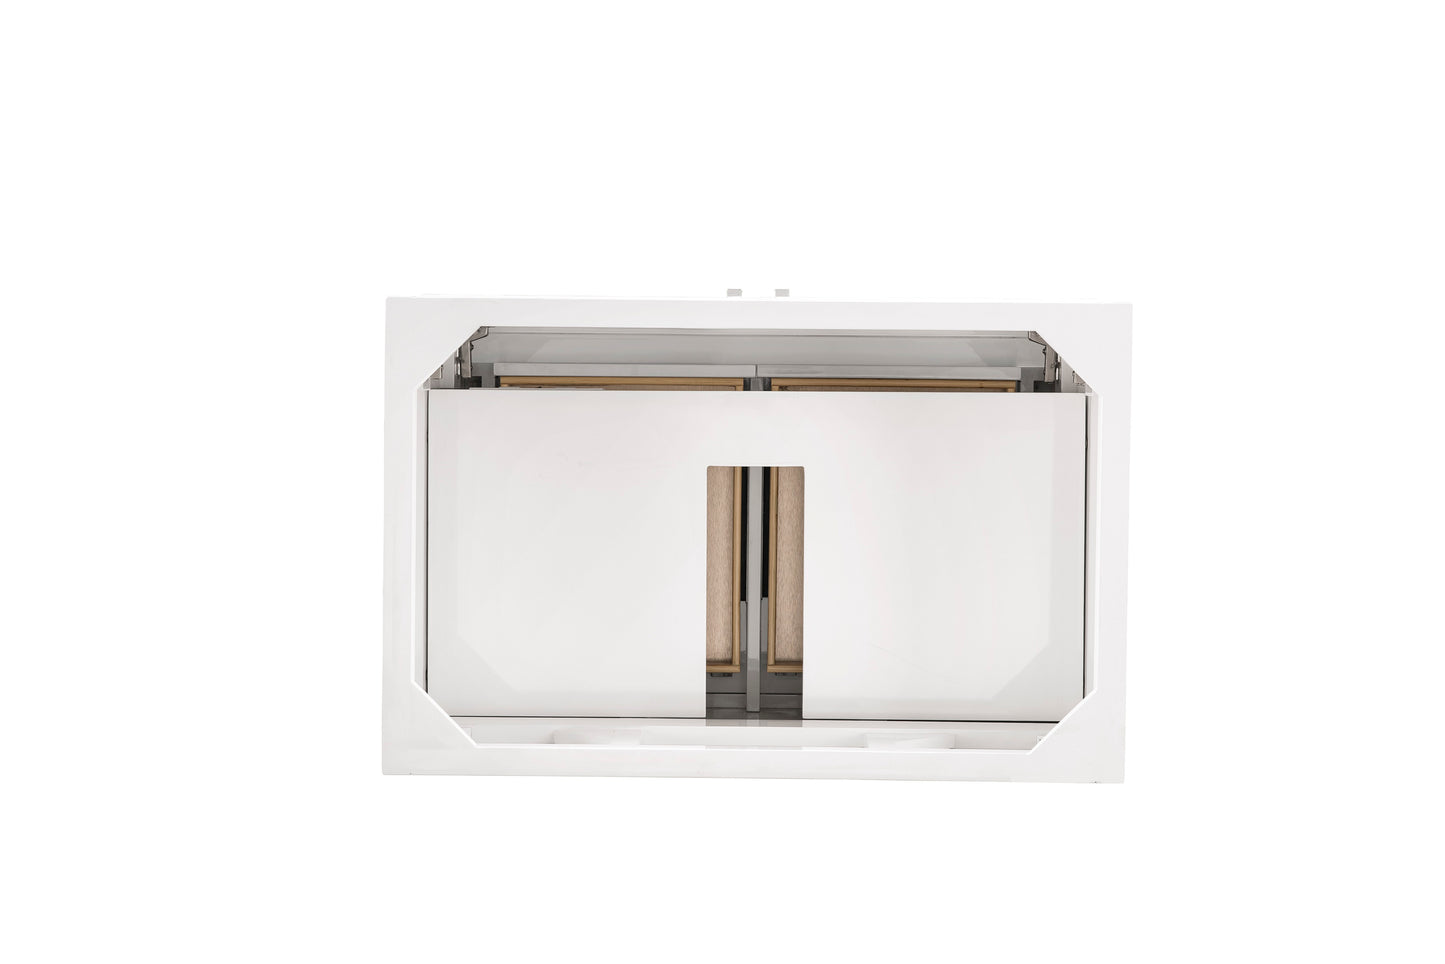 James Martin Athens 36" Single Vanity Cabinet (Cabinet Only) - Luxe Bathroom Vanities